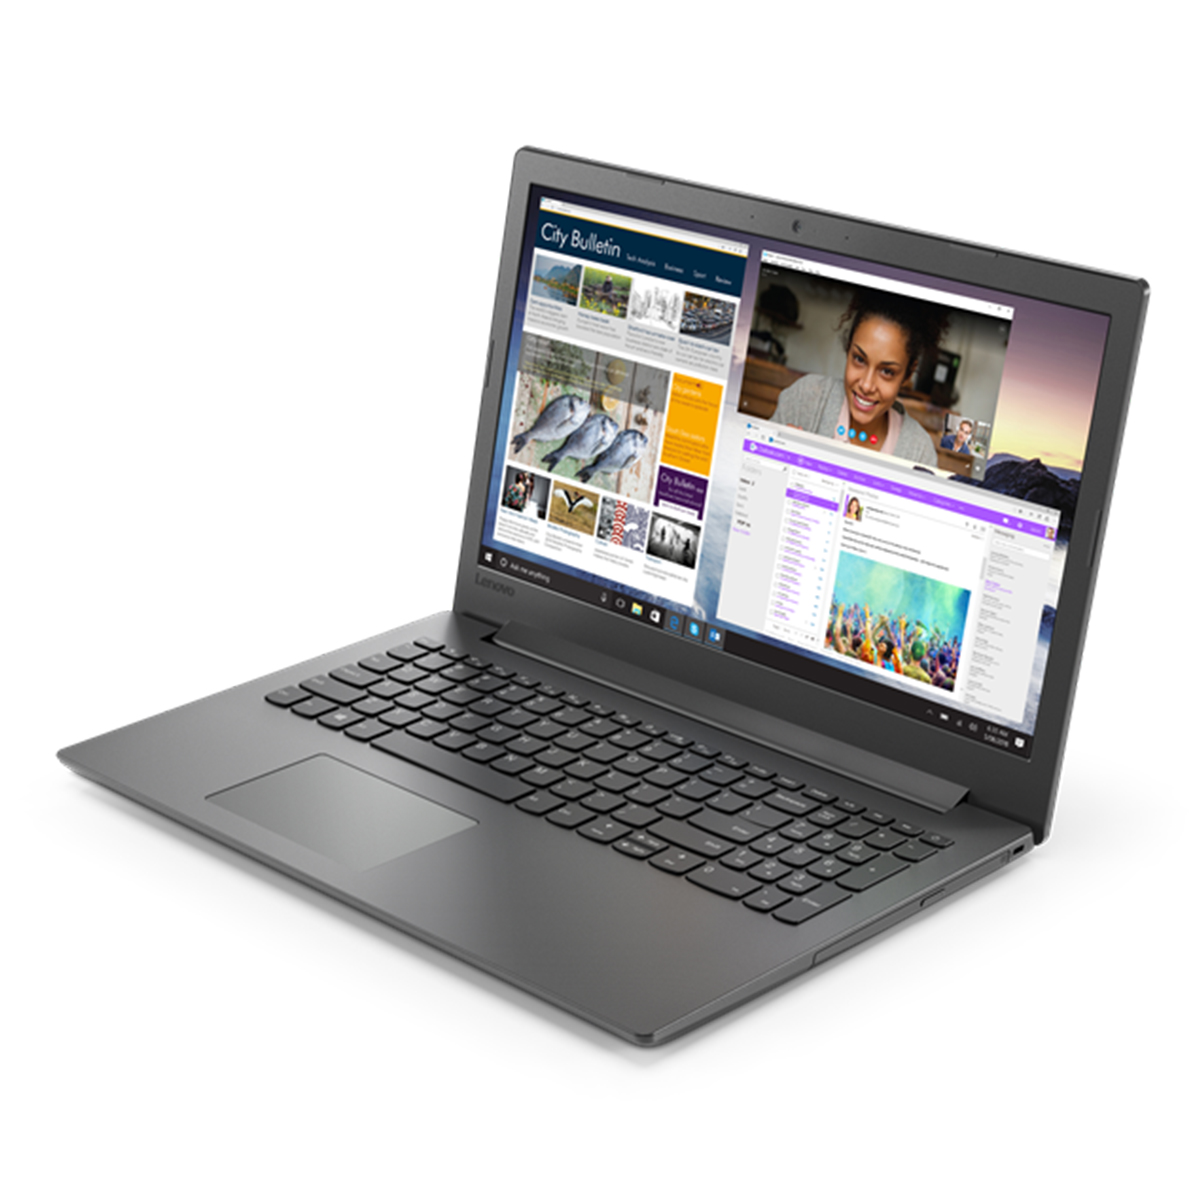 لپ تاپ 15 اینچی لنوو مدل Ideapad 130 - PC